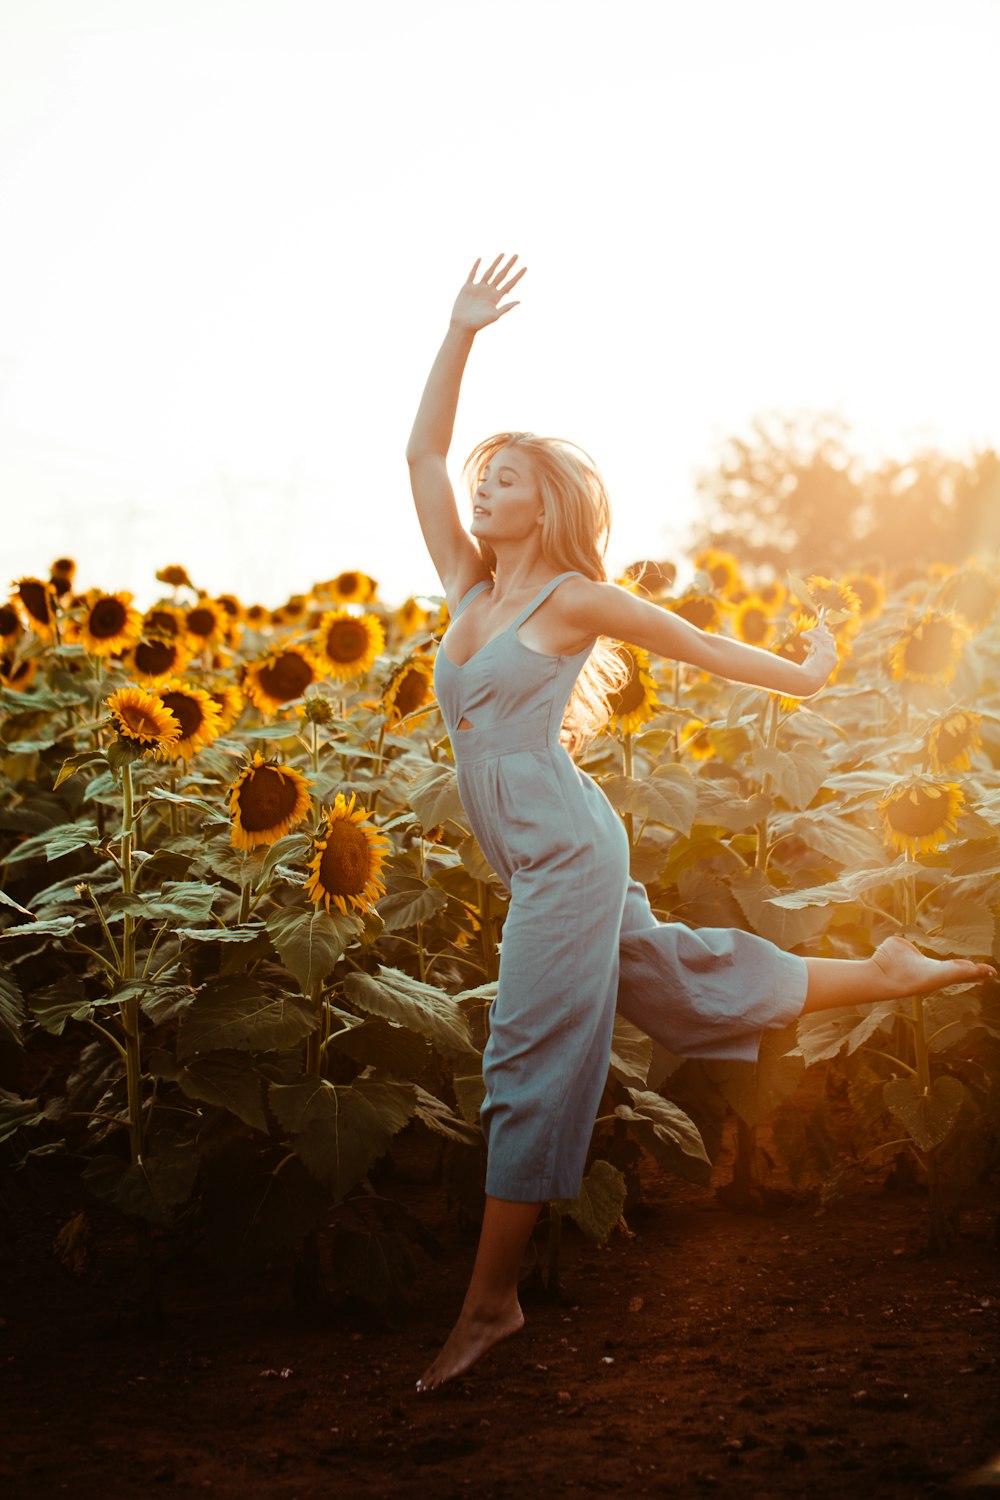 Photographie en gros plan d’une femme dansant à côté d’un champ de tournesol pendant l’heure dorée